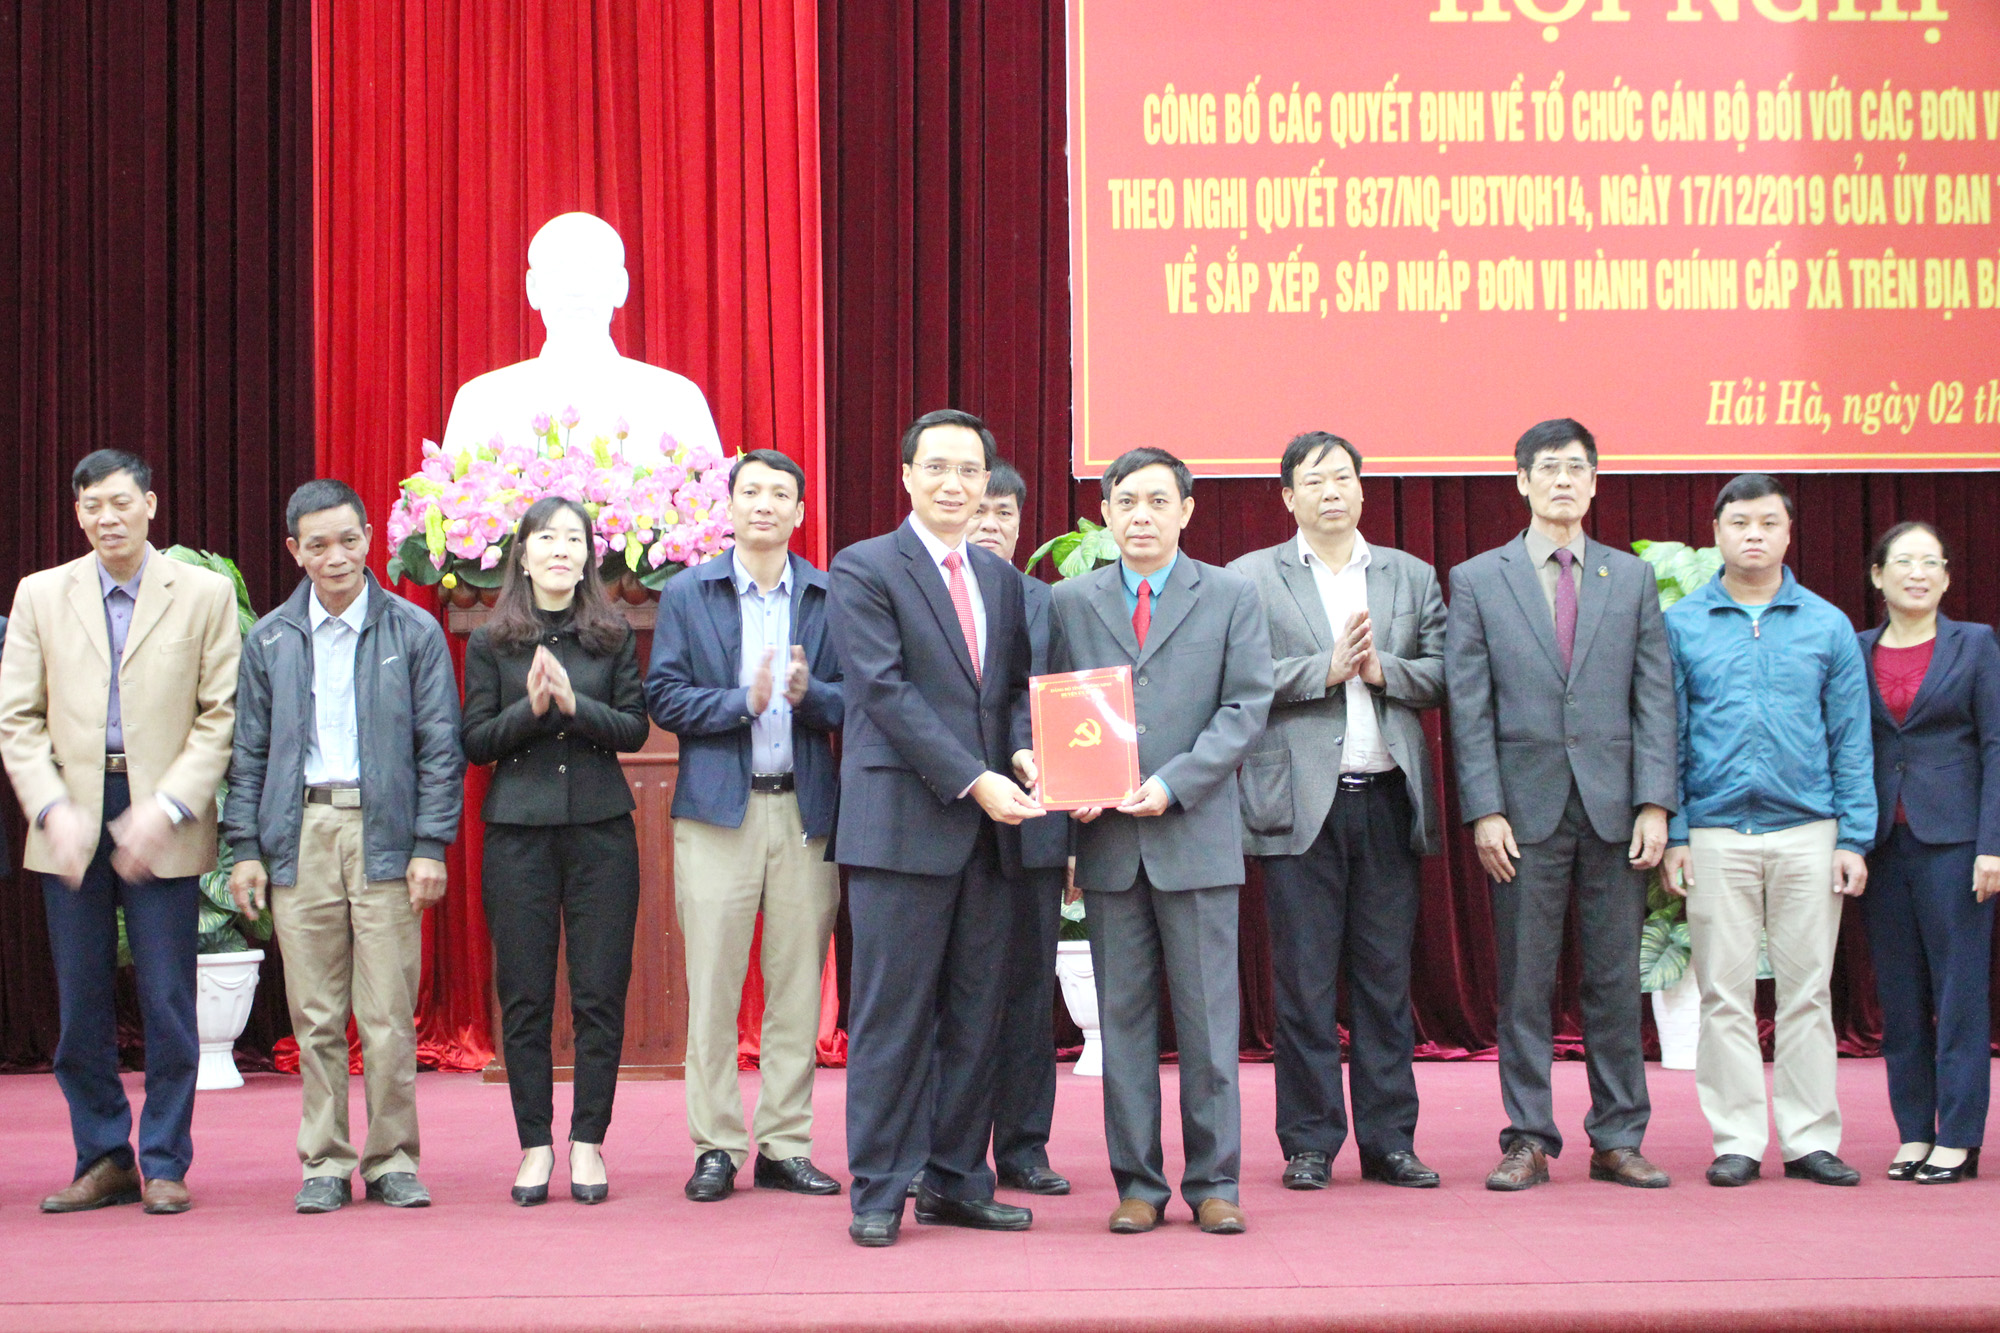 Đảng bộ huyện Hải Hà công bố thành lập Đảng bộ thị trấn Quảng Hà mới sau sáp nhập.